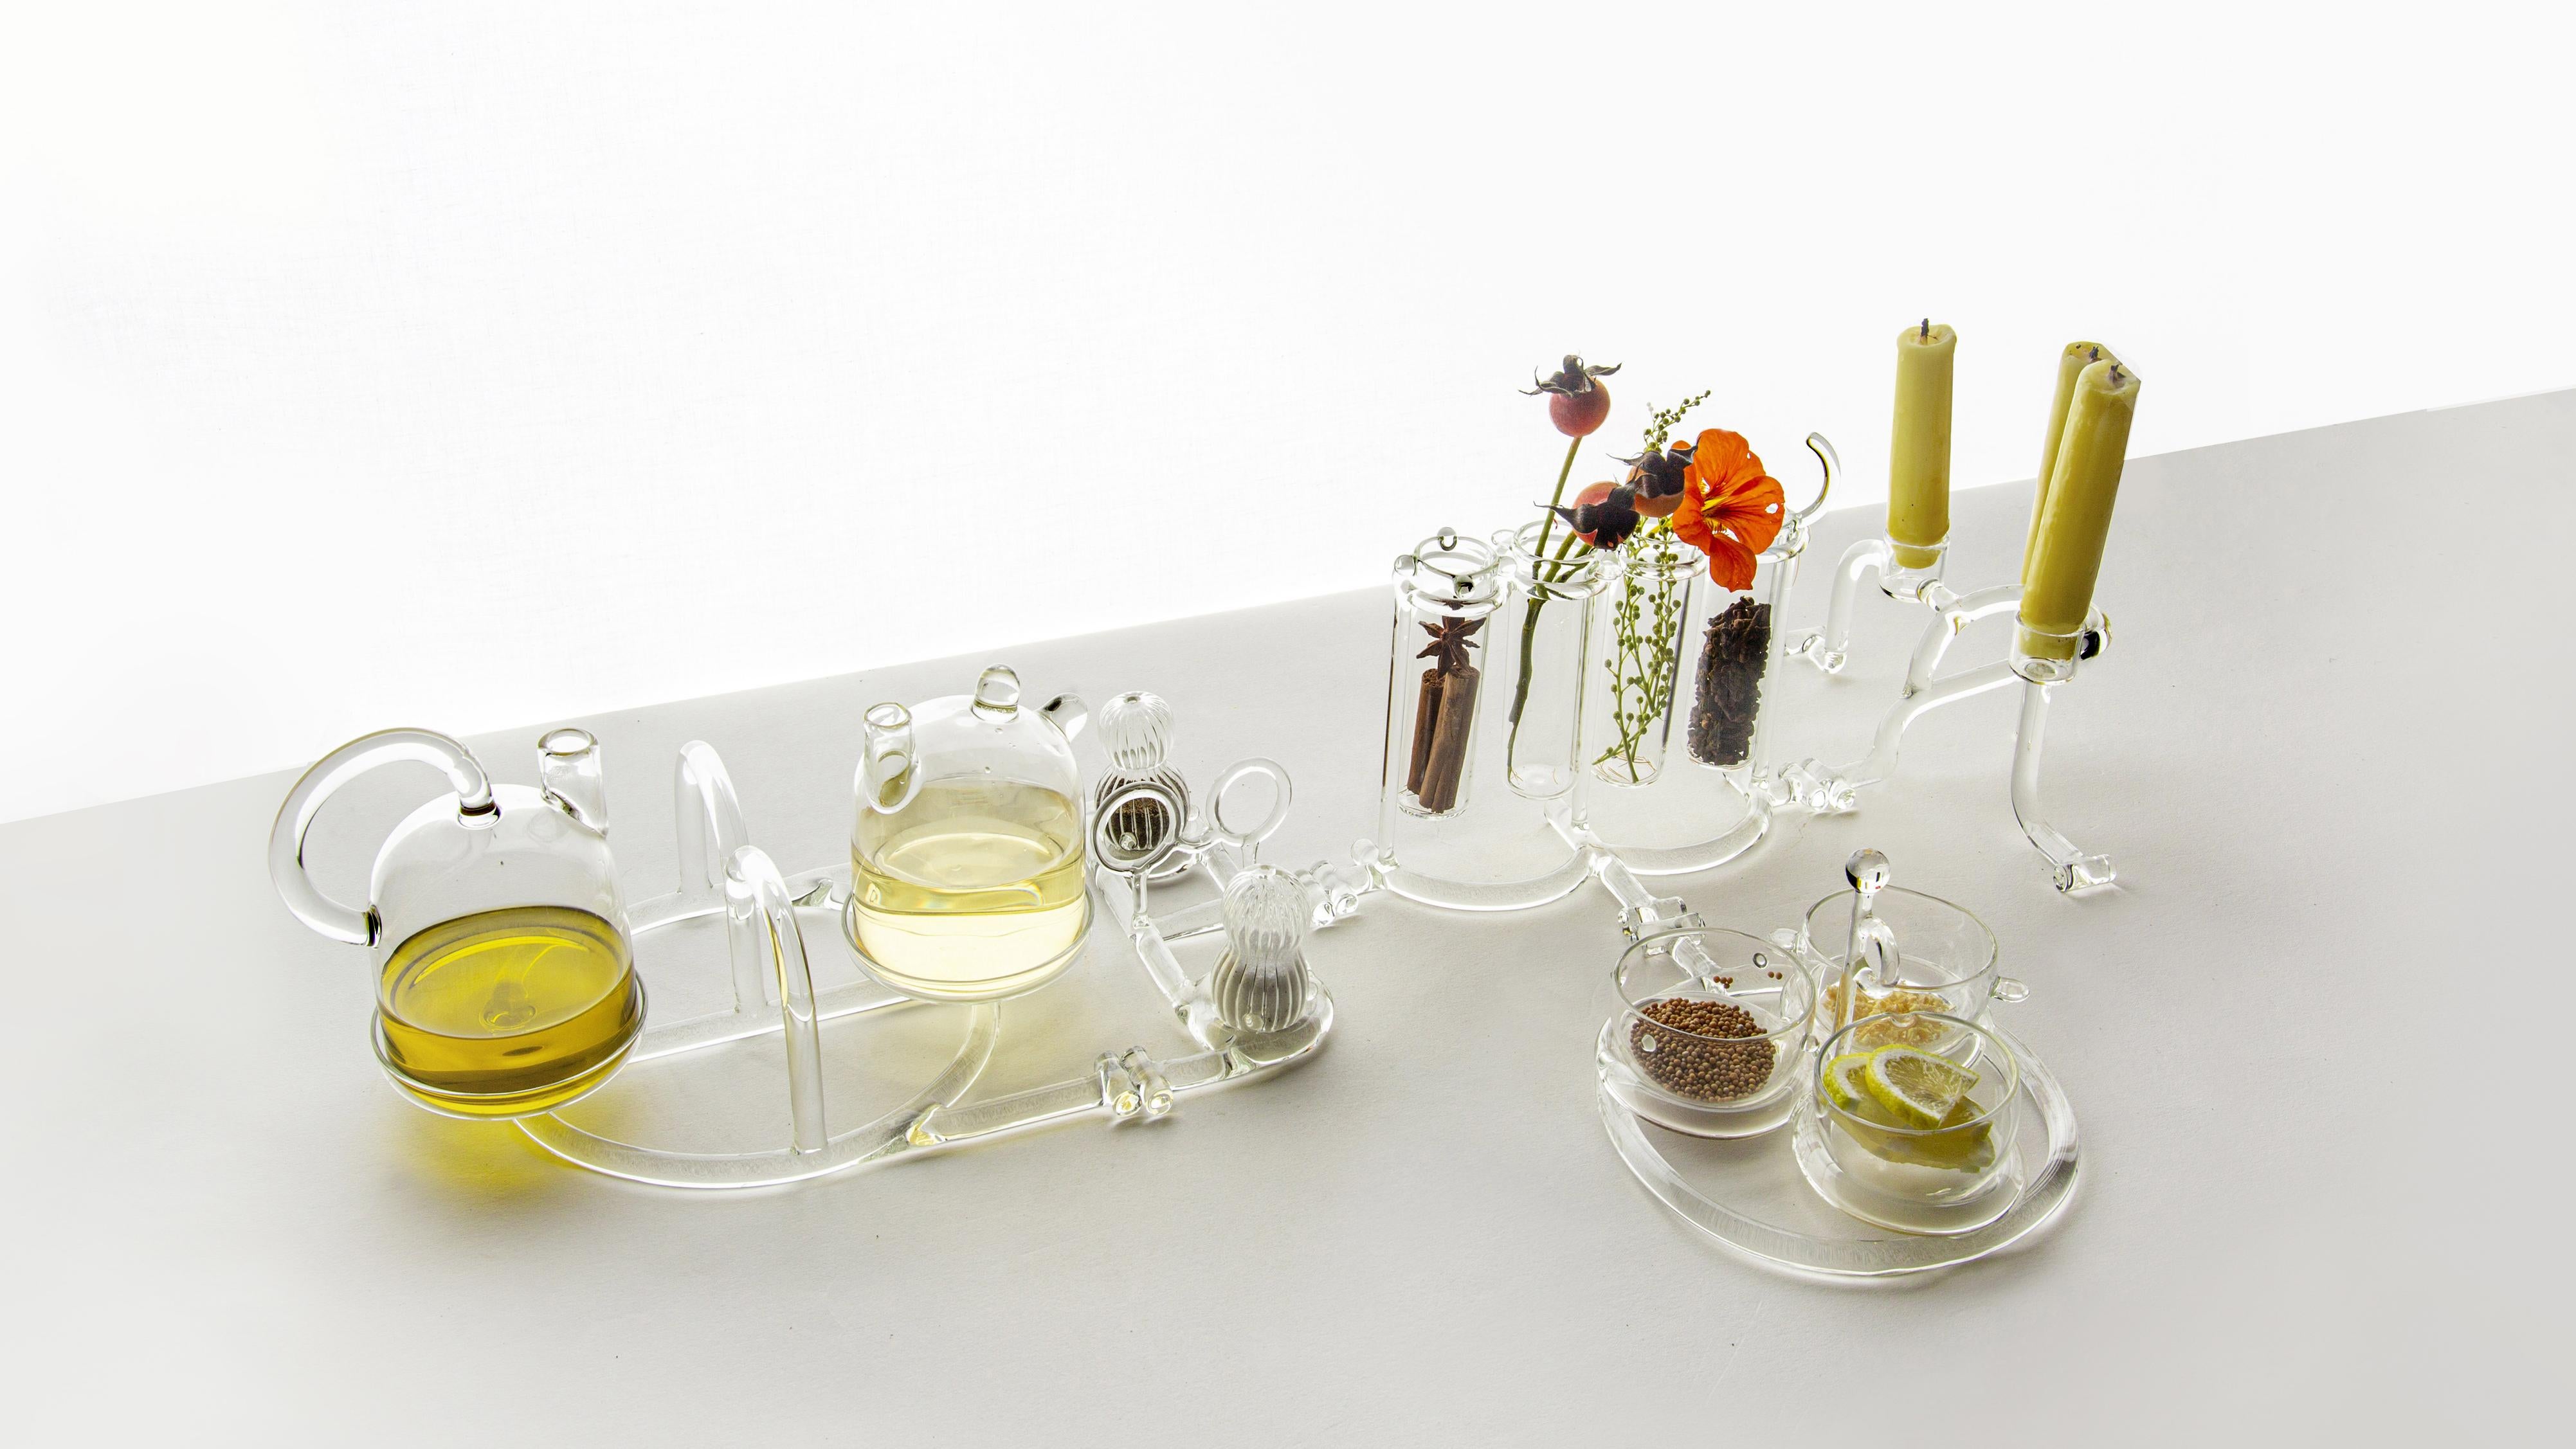 SiO2 komplette Geschirrkollektion (Öl- und Essigkännchen, Salz und Pfeffer, Kerzenständer, Sauciere und Blumen-/Gewürztopf)

Das Set besteht aus fünf Teilen: Salz & Pfeffer, Öl & Essig, Saucieren, Vasen und
kerzenhalter, die je nach Bedarf in